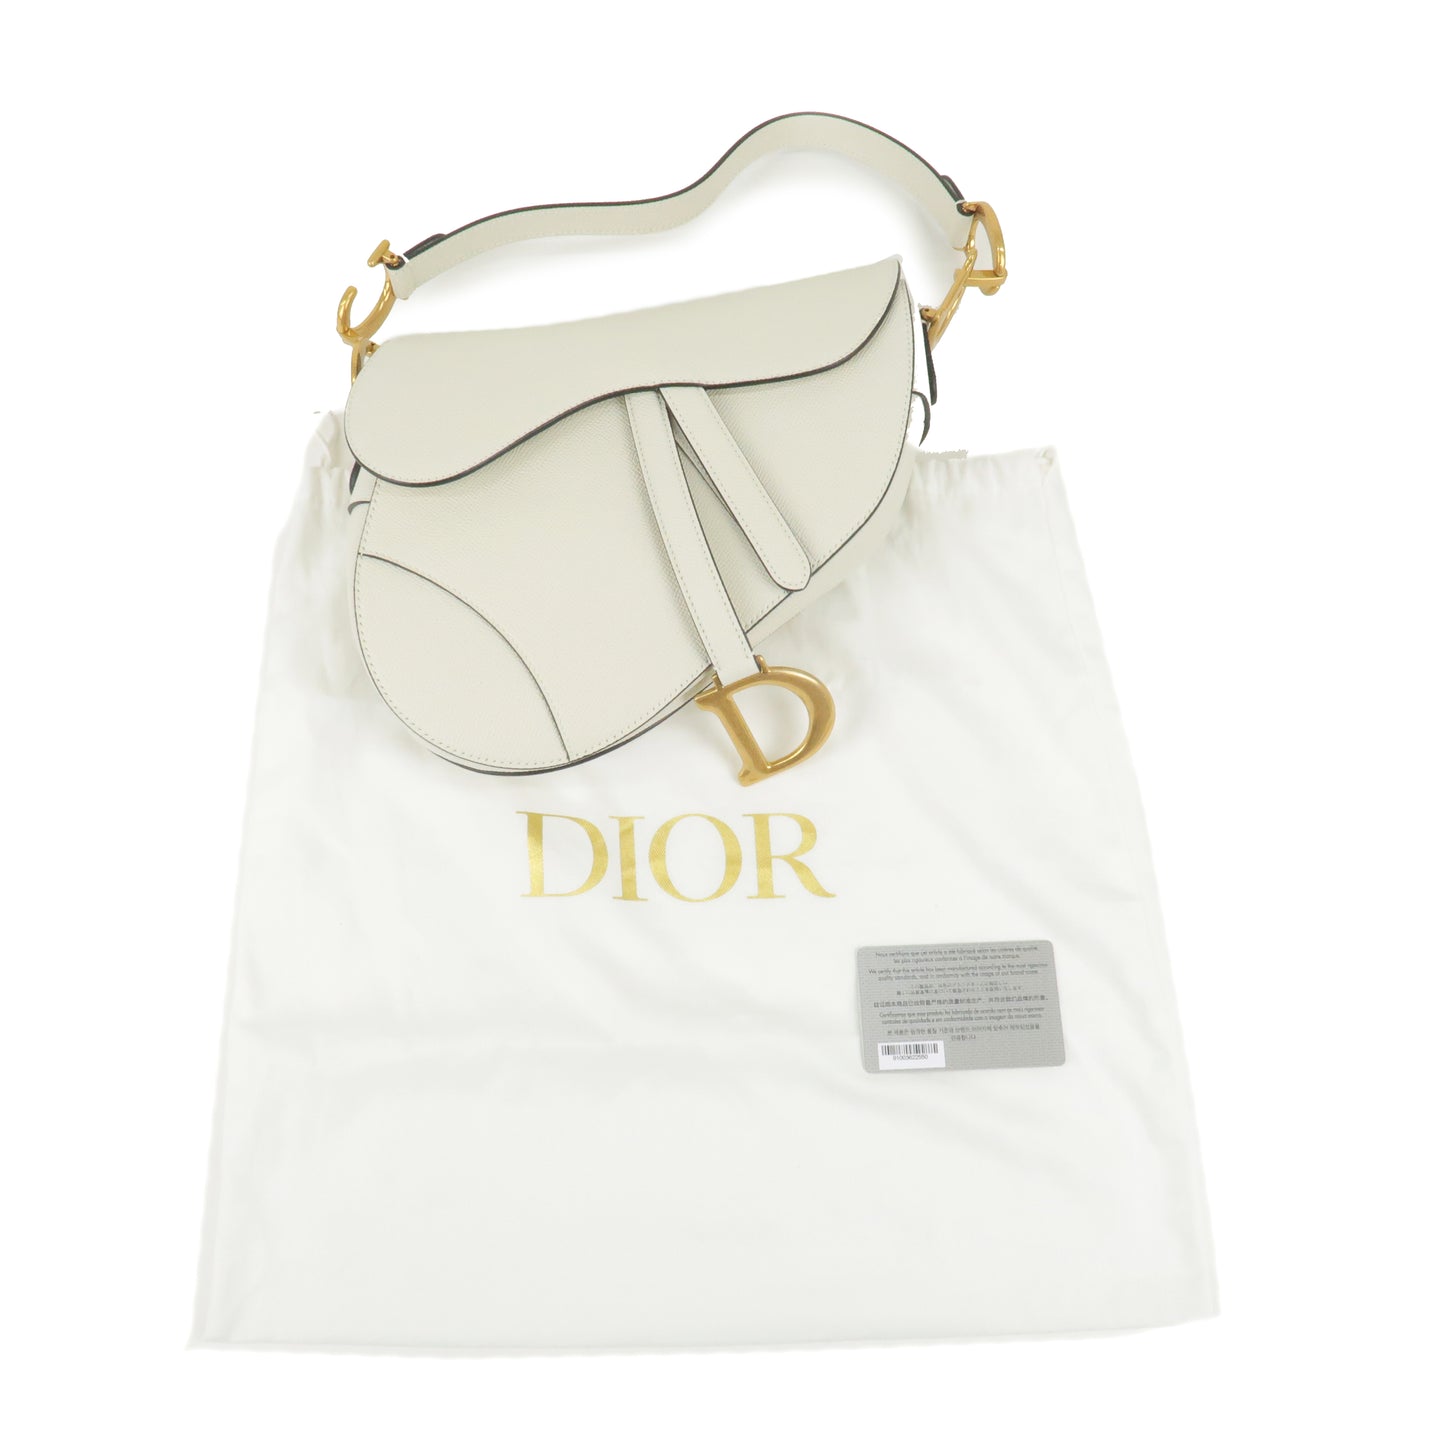 Christian Dior Leather Saddle Bag Shoulder Bag Purse White